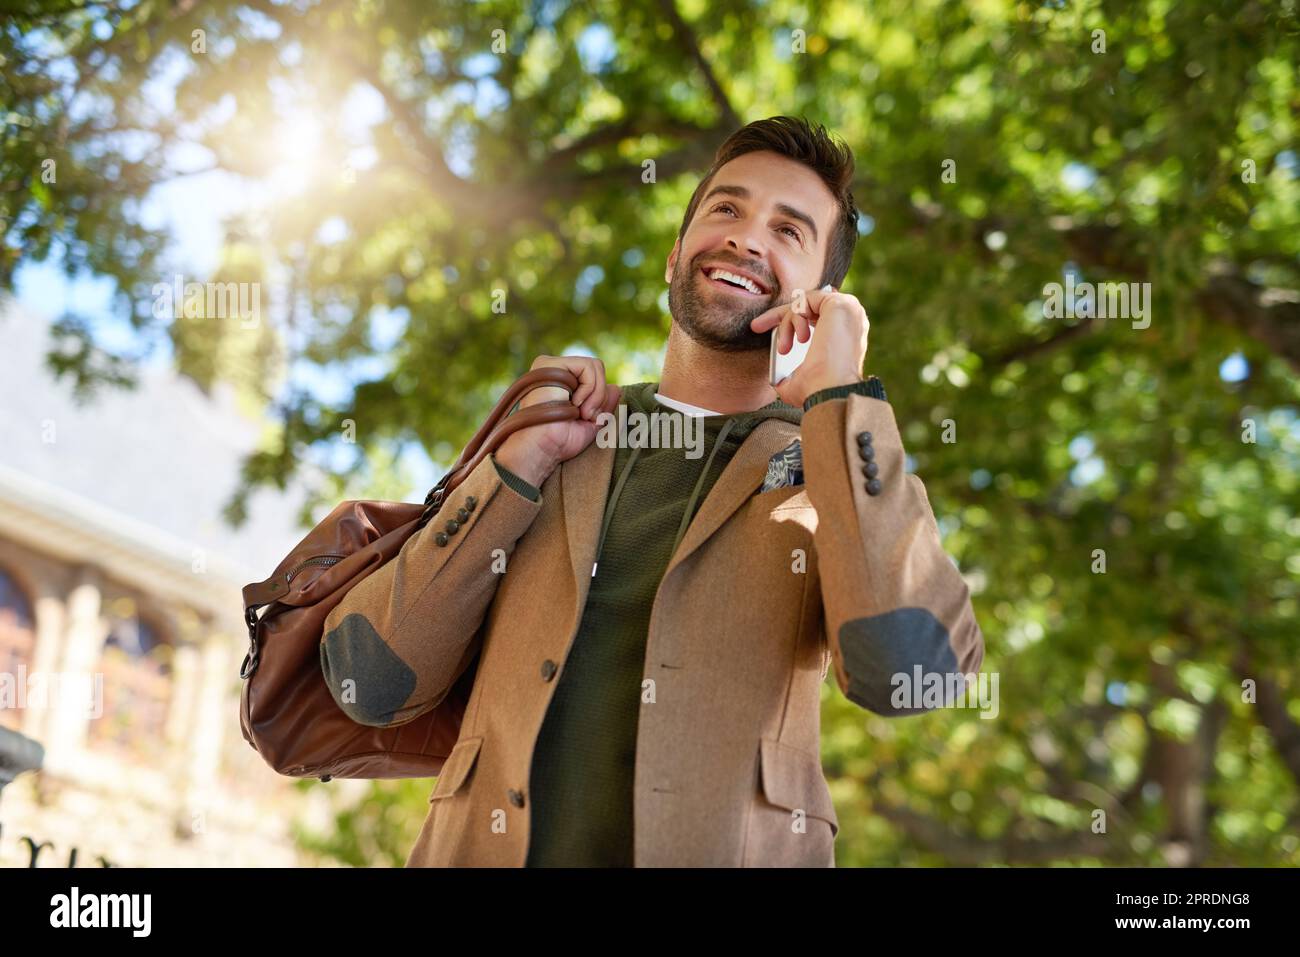 Ja, ich bin gerade auf dem Weg nach draußen. Ein hübscher junger Mann, der während seines morgendlichen Pendelvorgangs einen Telefonanruf ablegt. Stockfoto